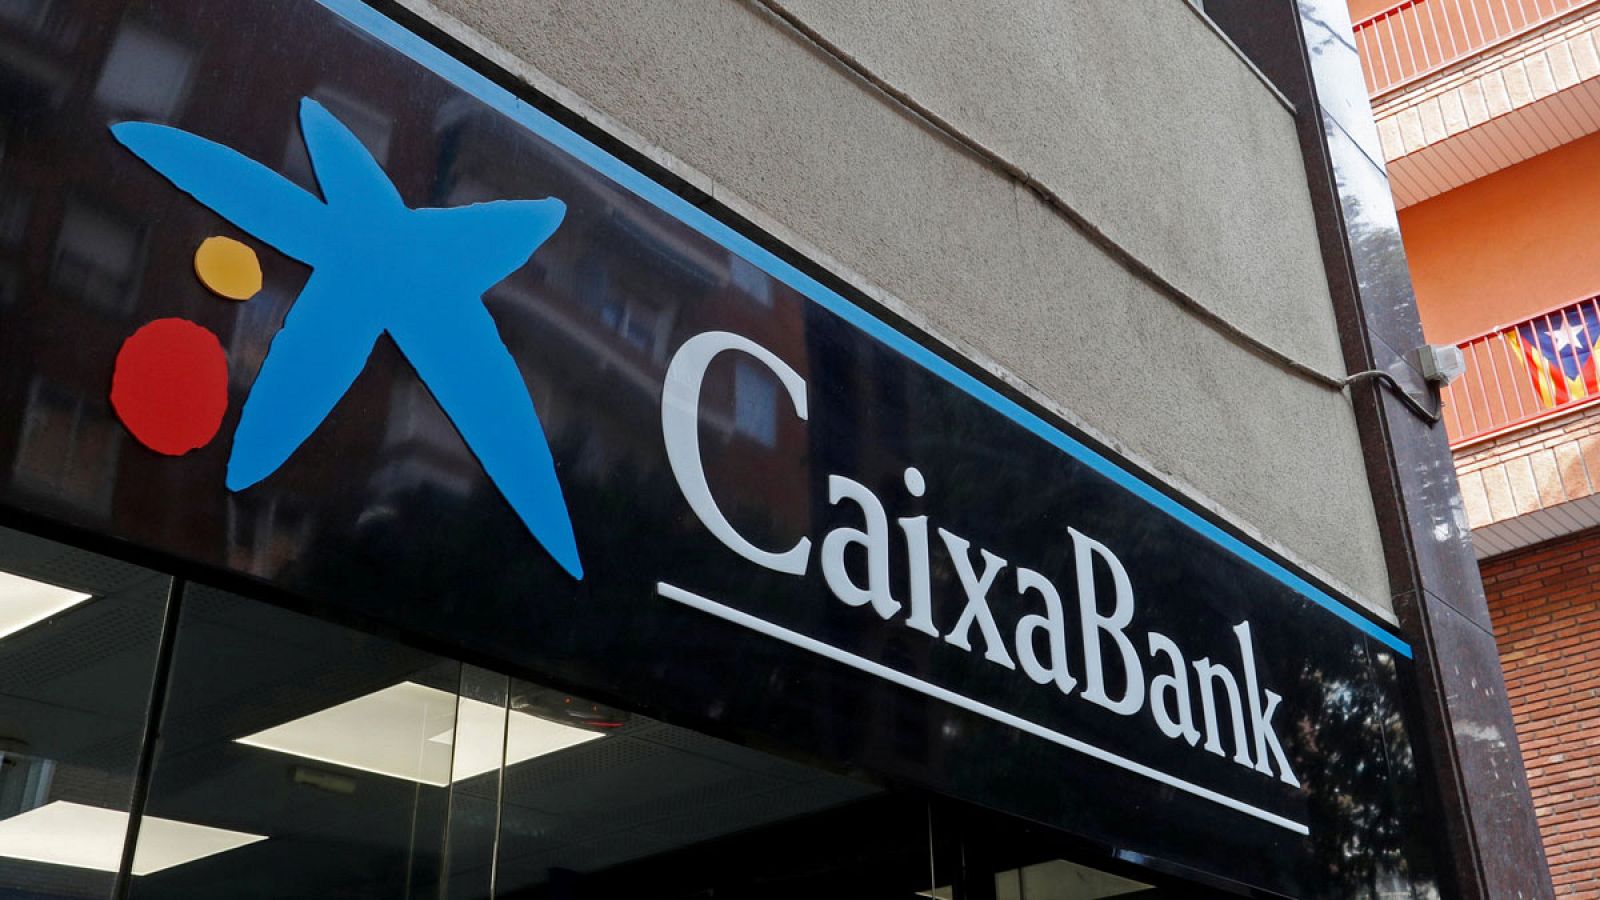 Oficina de Caixabank en una calle de Barcelona